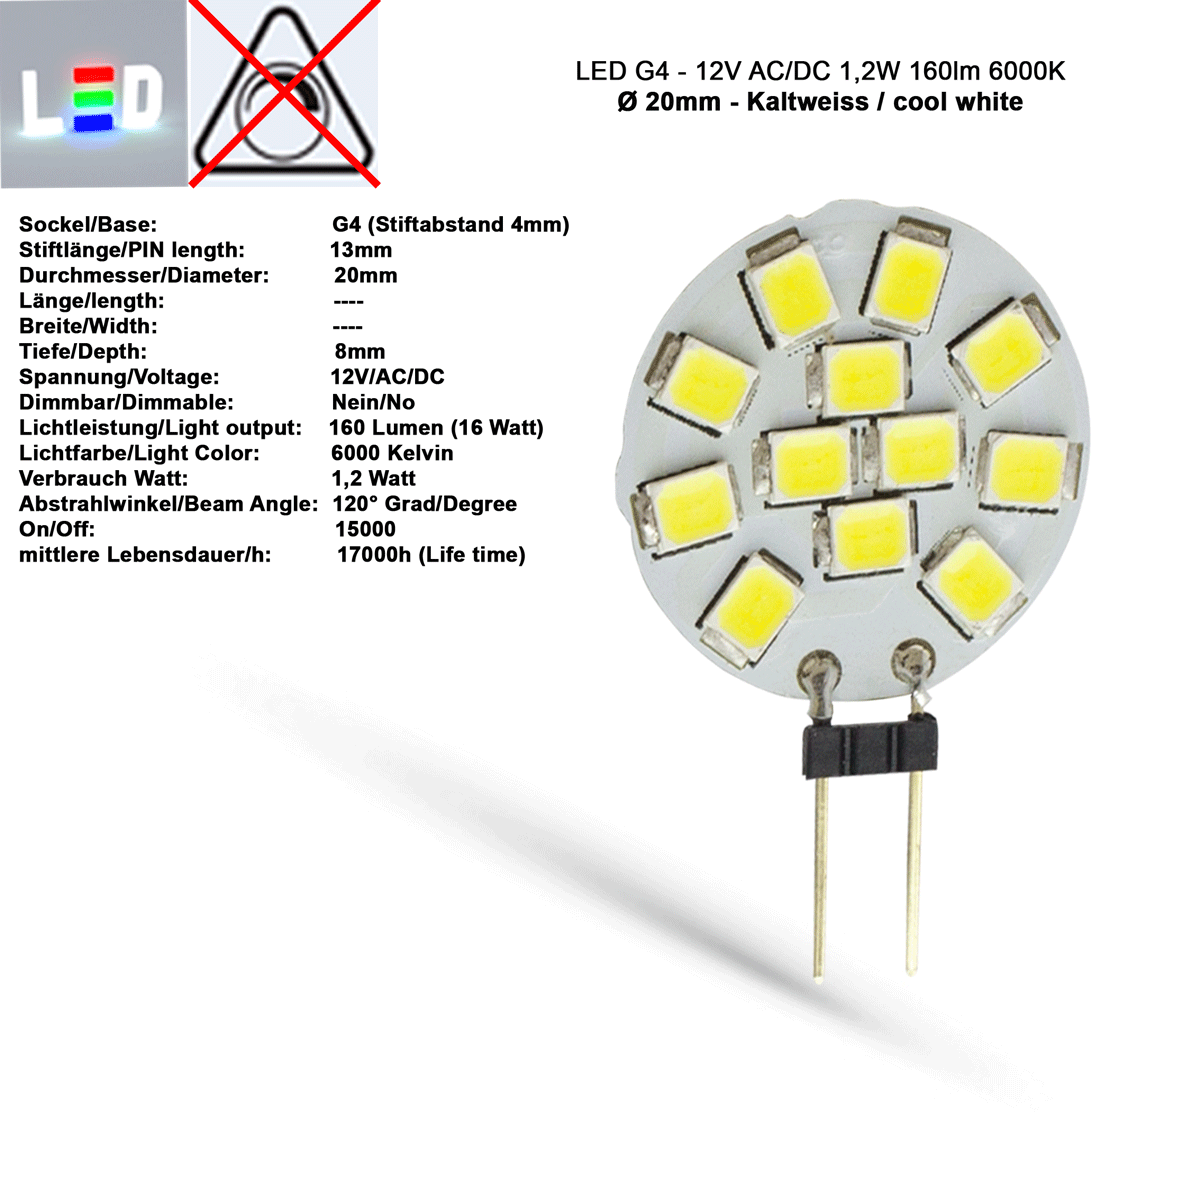 LED G4 Mini Scheiben-Form 12V/AC/DC  ⌀ 20mm  T8mm Stiftlänge 13mm 1,2W (1,2W = 16W)  6000K Kaltweiss 160lm 120° nicht dimmbar